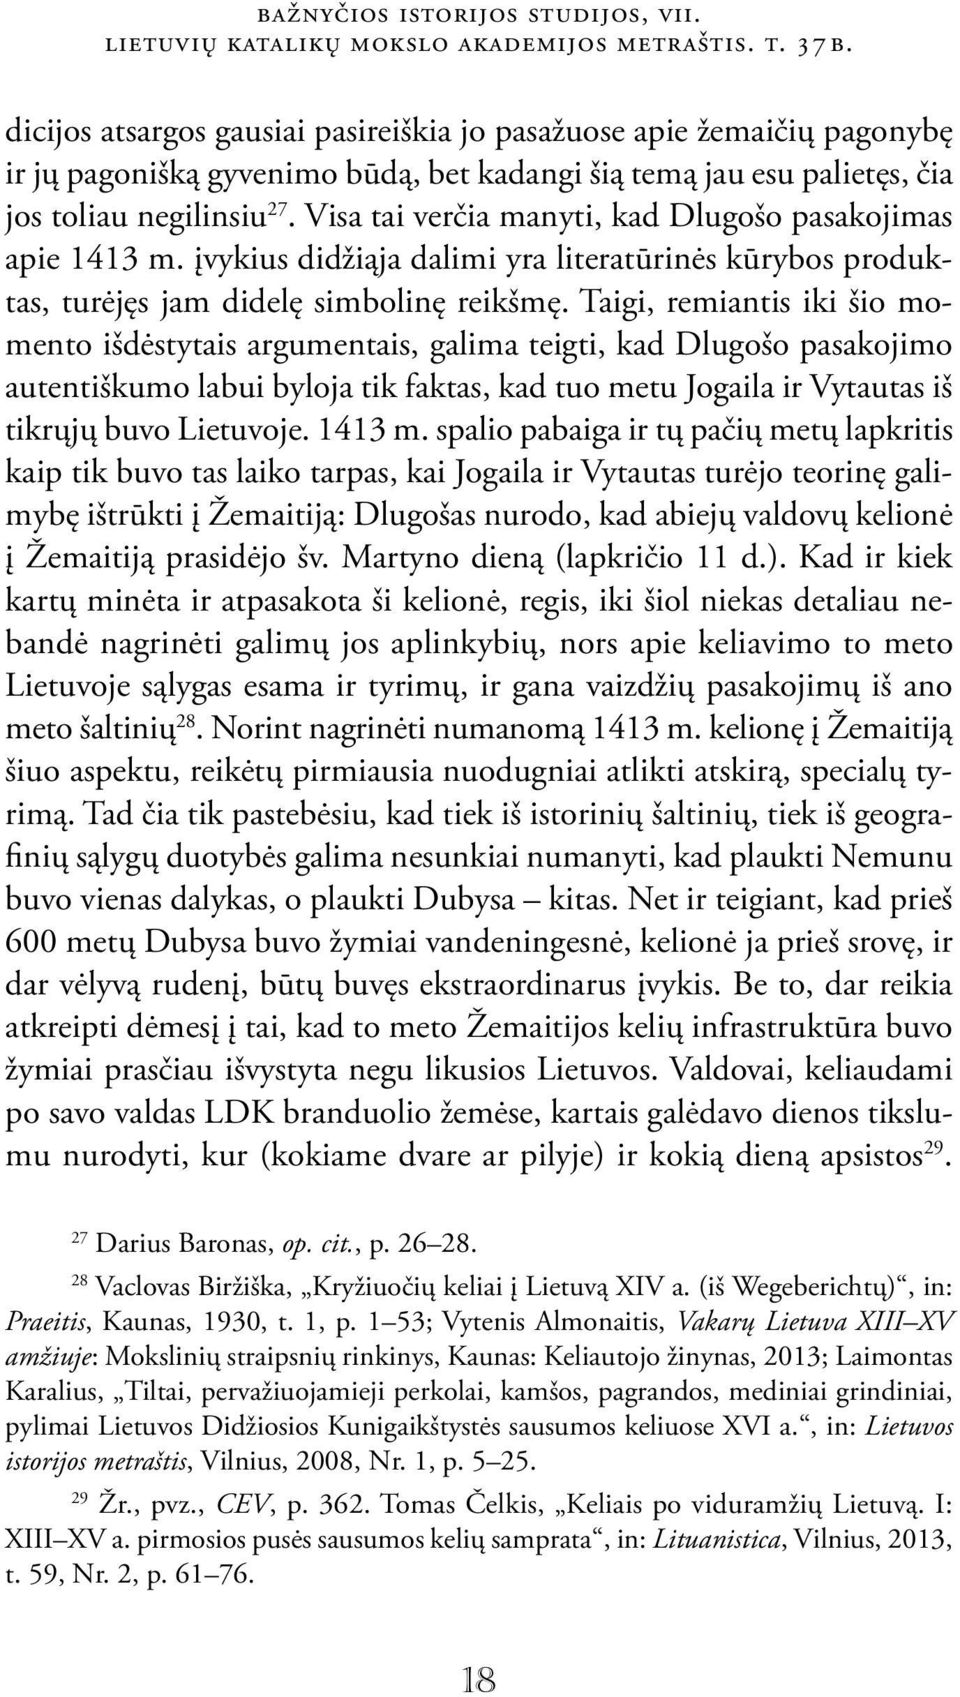 Visa tai verčia manyti, kad Dlugošo pasakojimas apie 1413 m. įvykius didžiąja dalimi yra literatūrinės kūrybos produktas, turėjęs jam didelę simbolinę reikšmę.